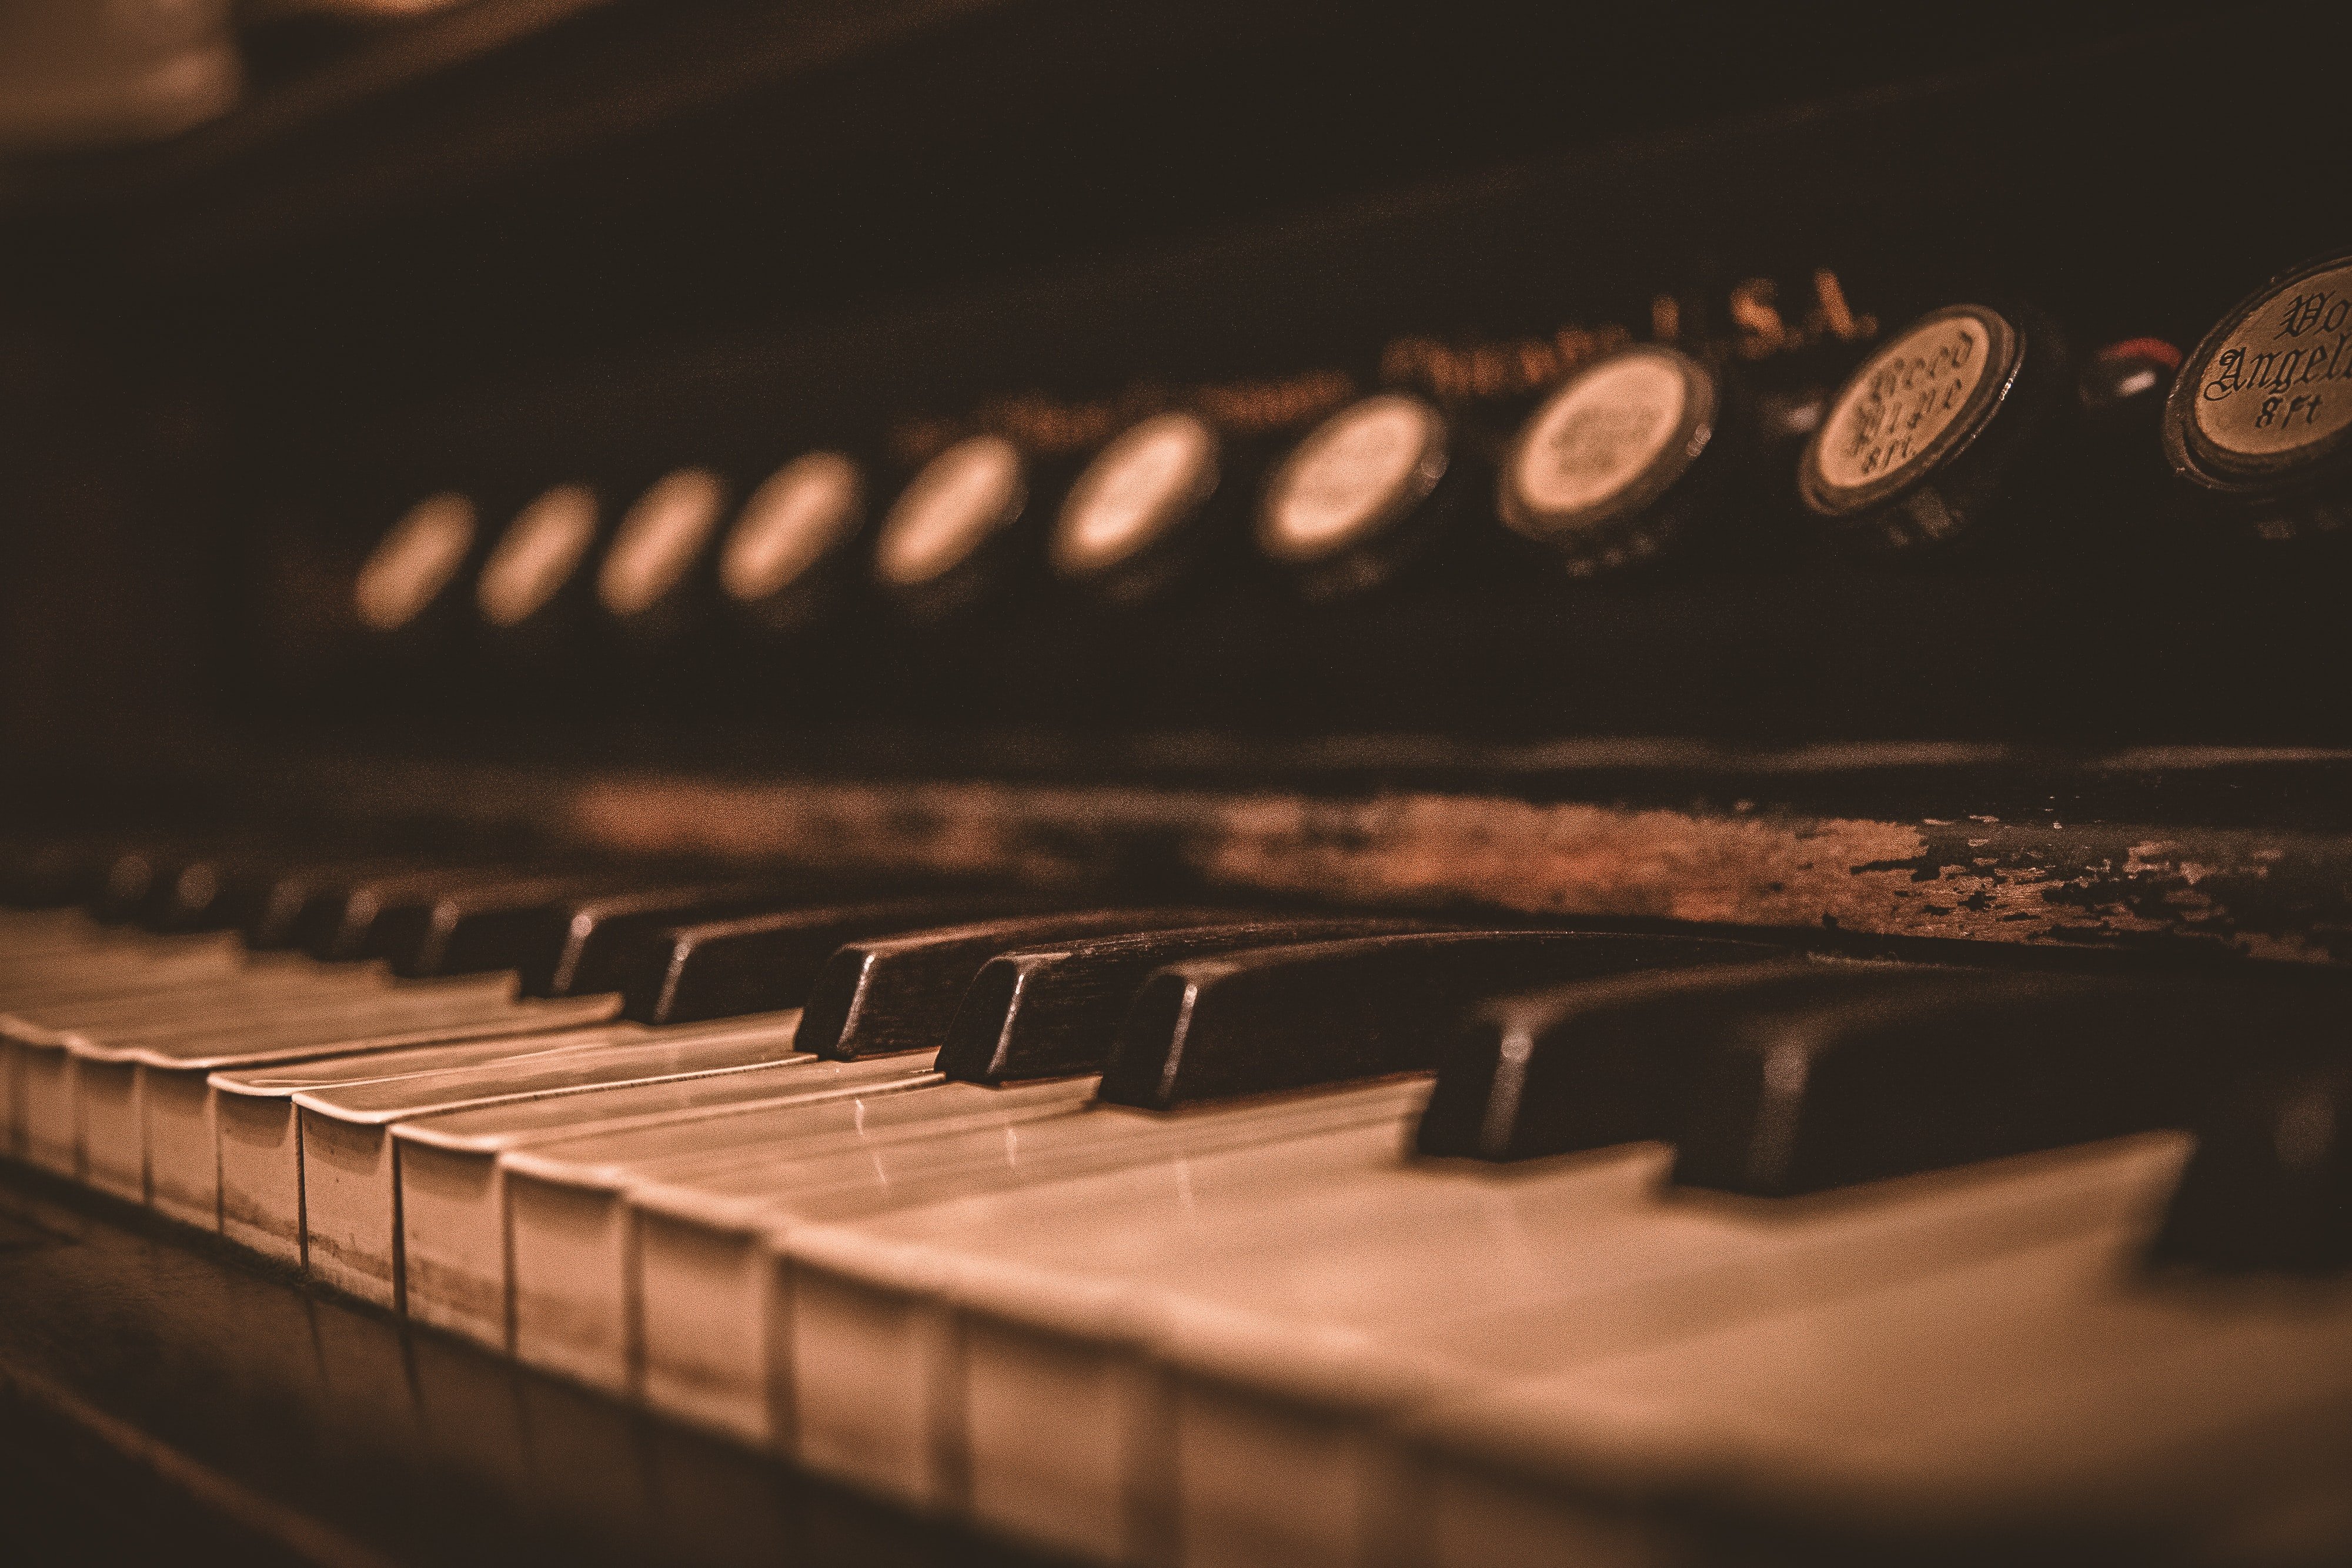 Das versteckte Vermögen in dem alten Klavier hat Adeles Leben für immer verändert. | Quelle: Unsplash